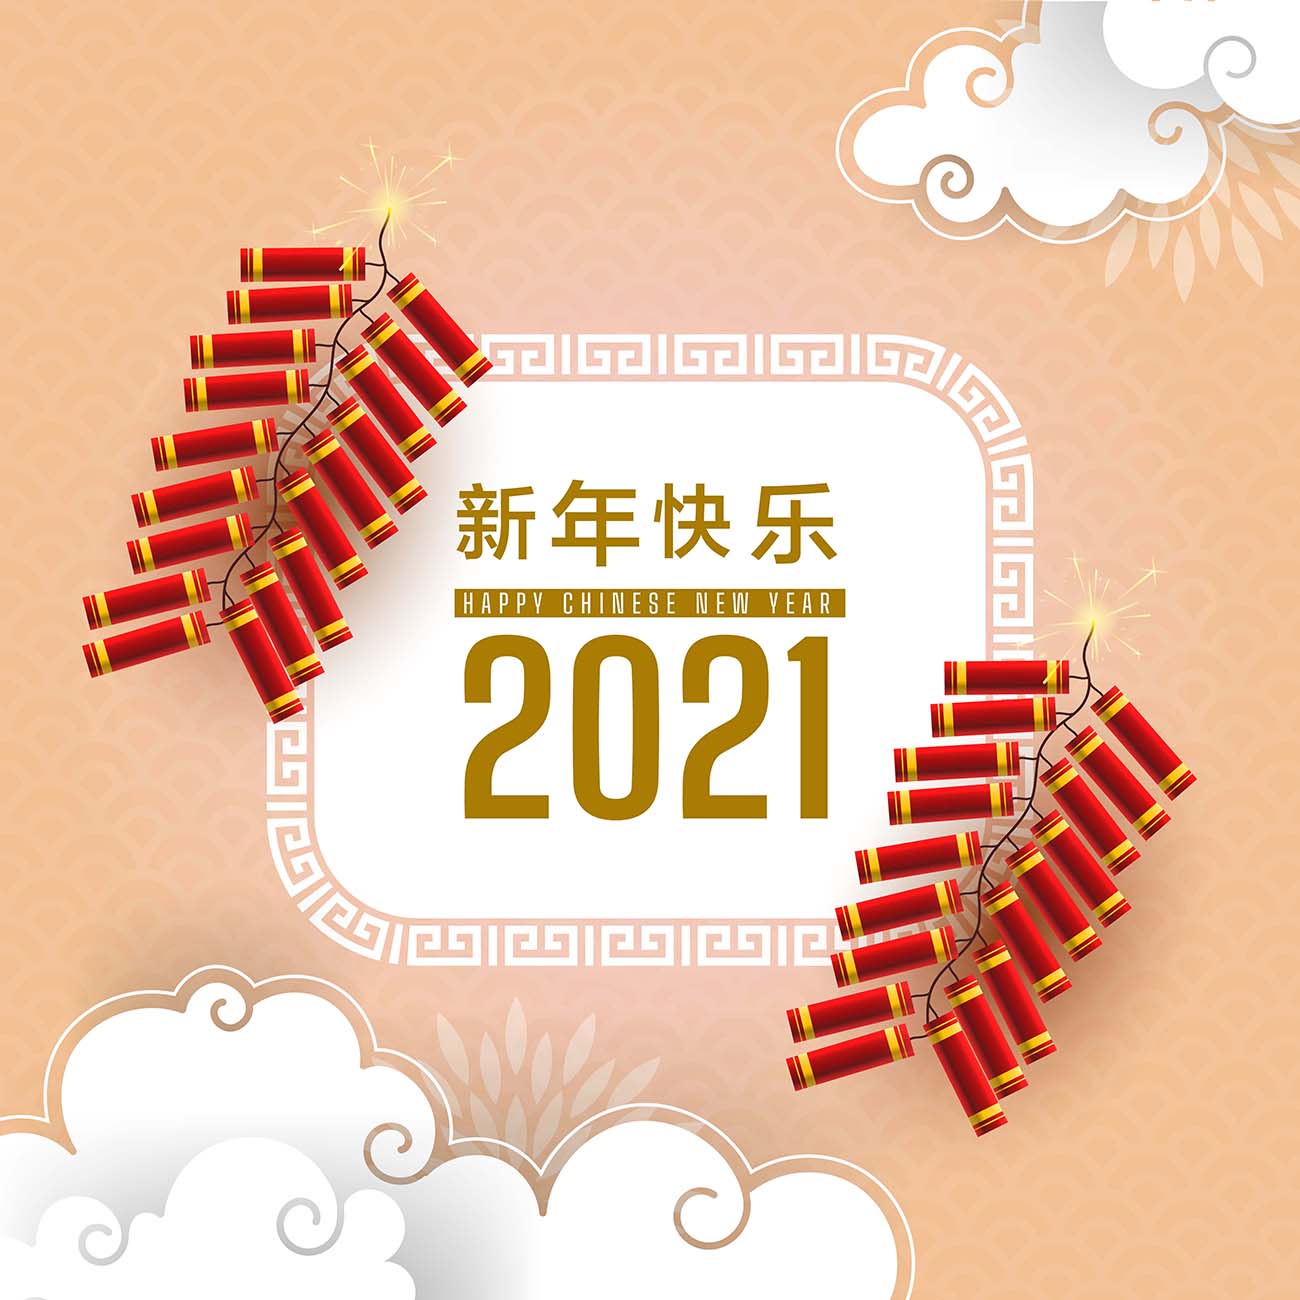 中国新年快乐2021年贺卡与烟花矢量源文件happy-chinese-new-year-2021  image